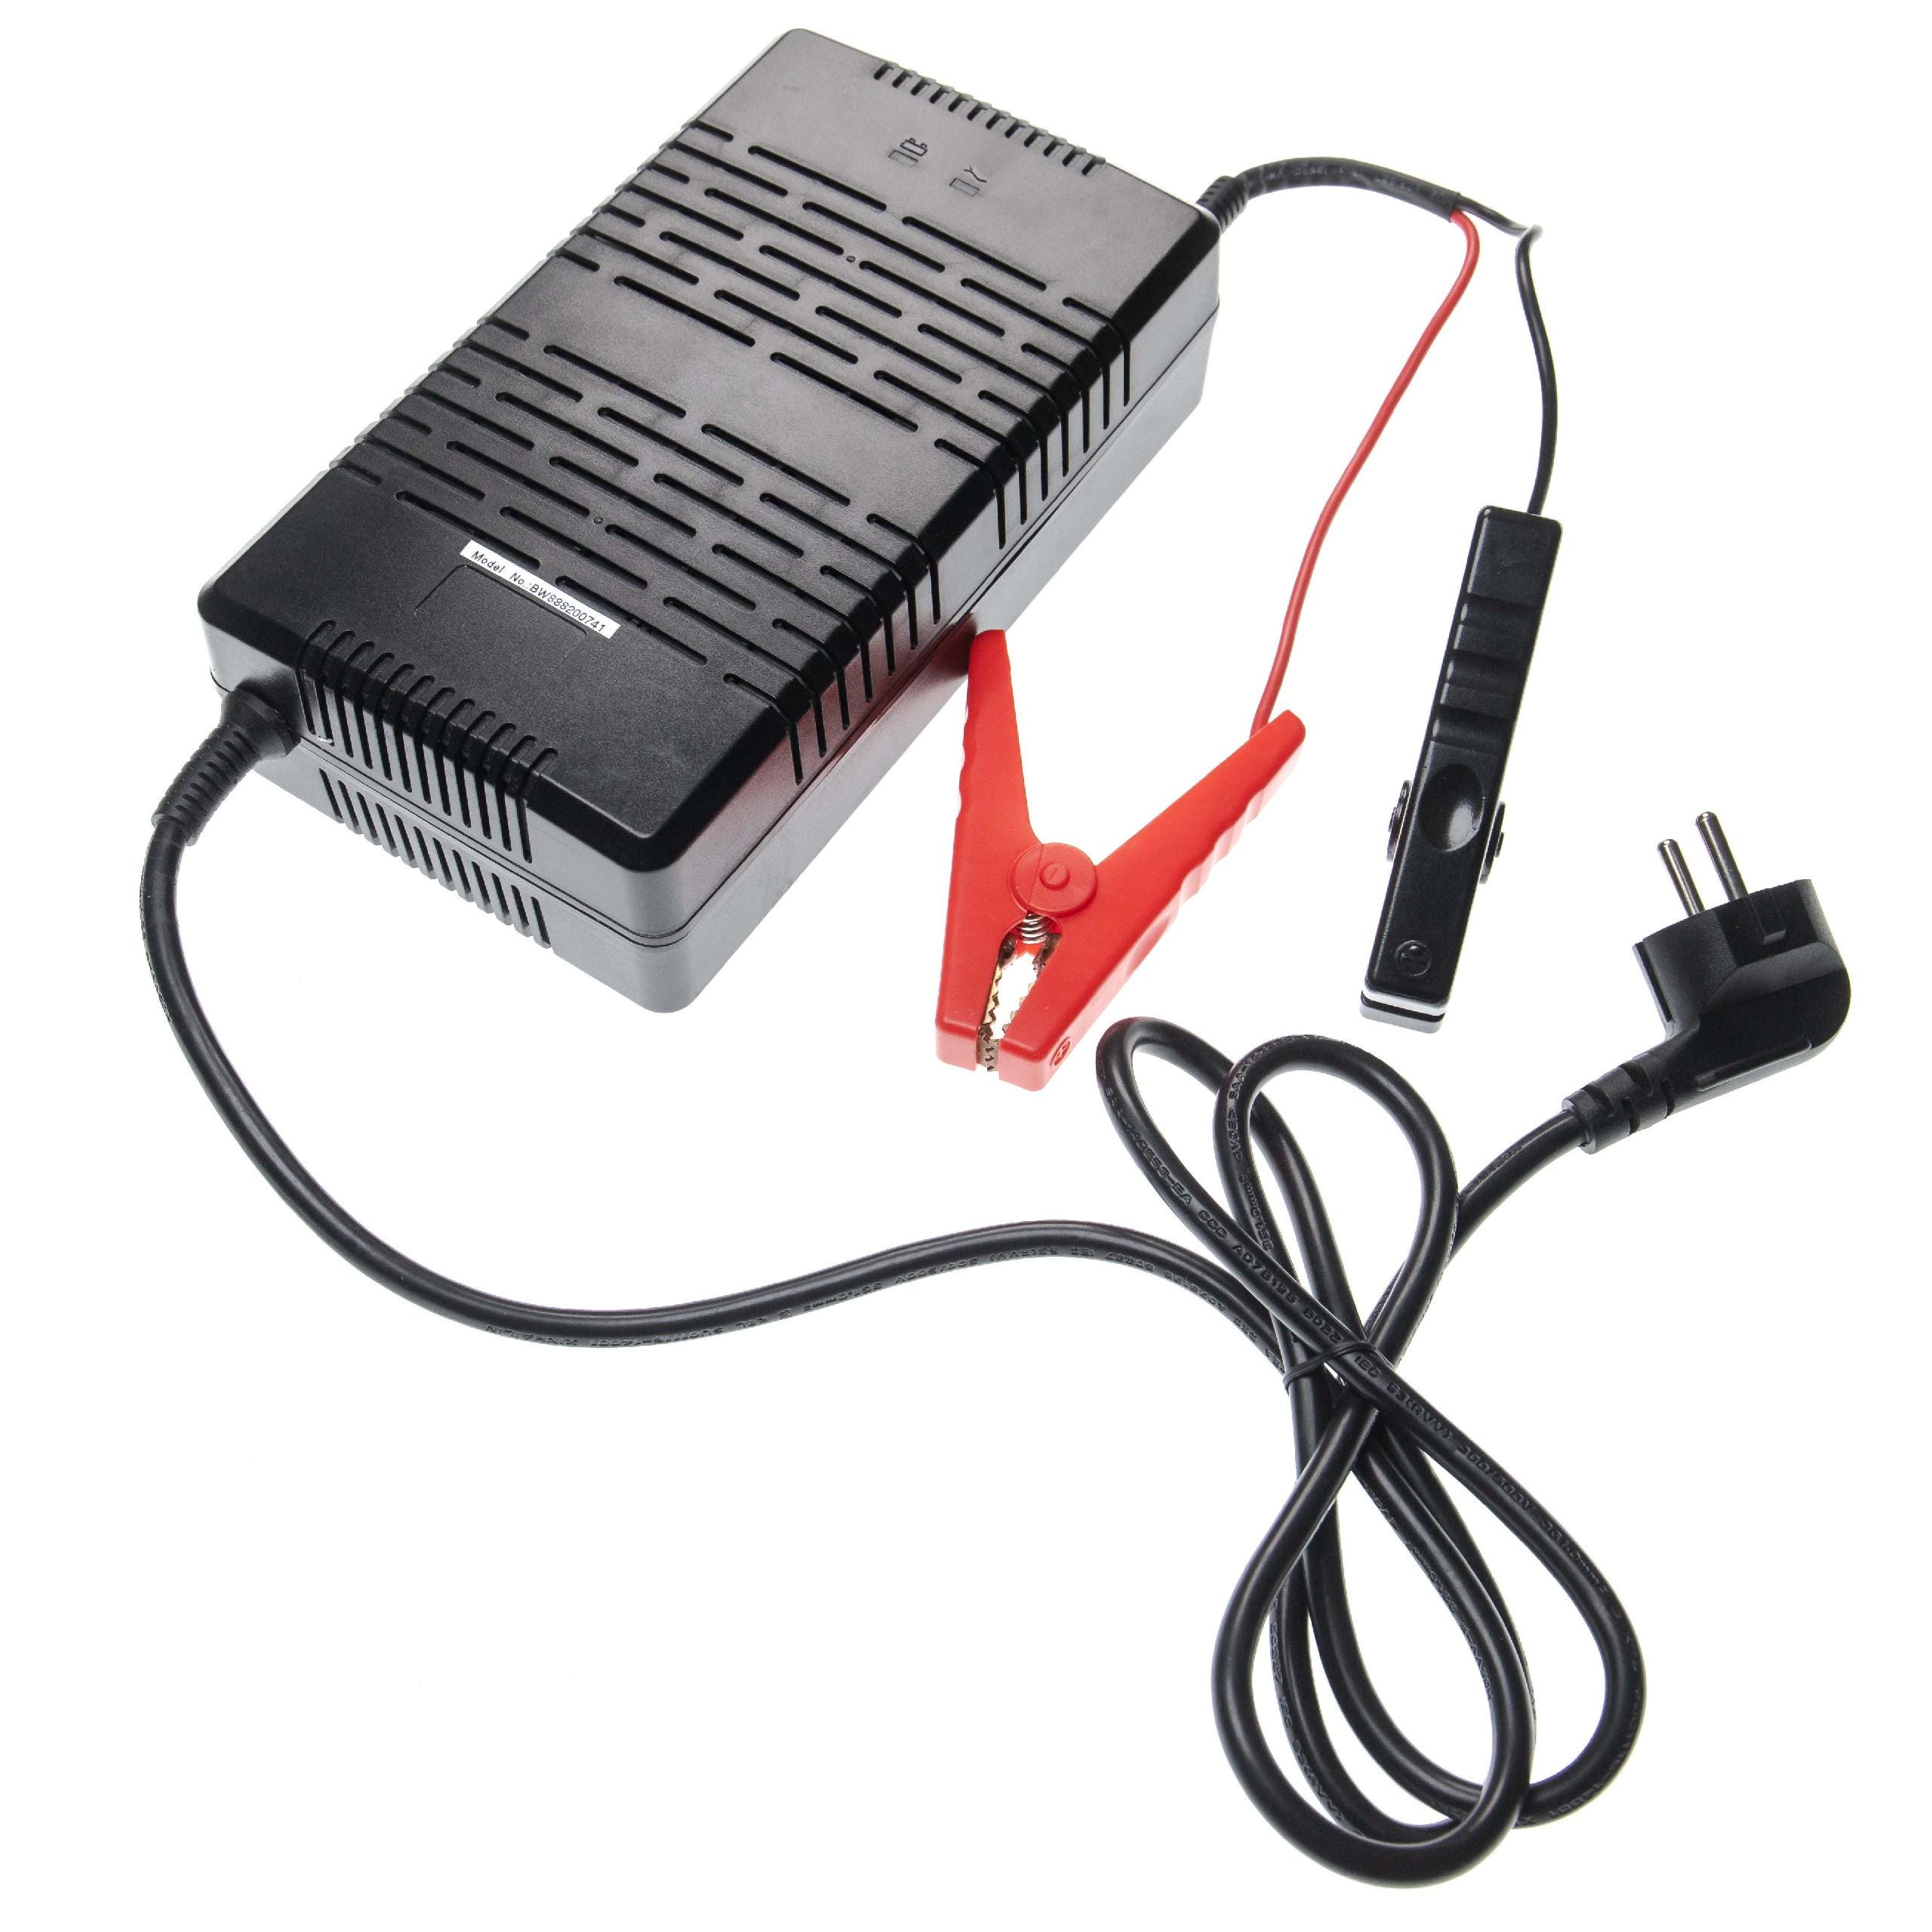 Vhbw chargeur pour batterie de caravane (LiFePO4, 12.8V) chargeur de  batterie avec bornes + affichage LED (AC 100-240V, 5.5A, DC 14.6V, 30A)